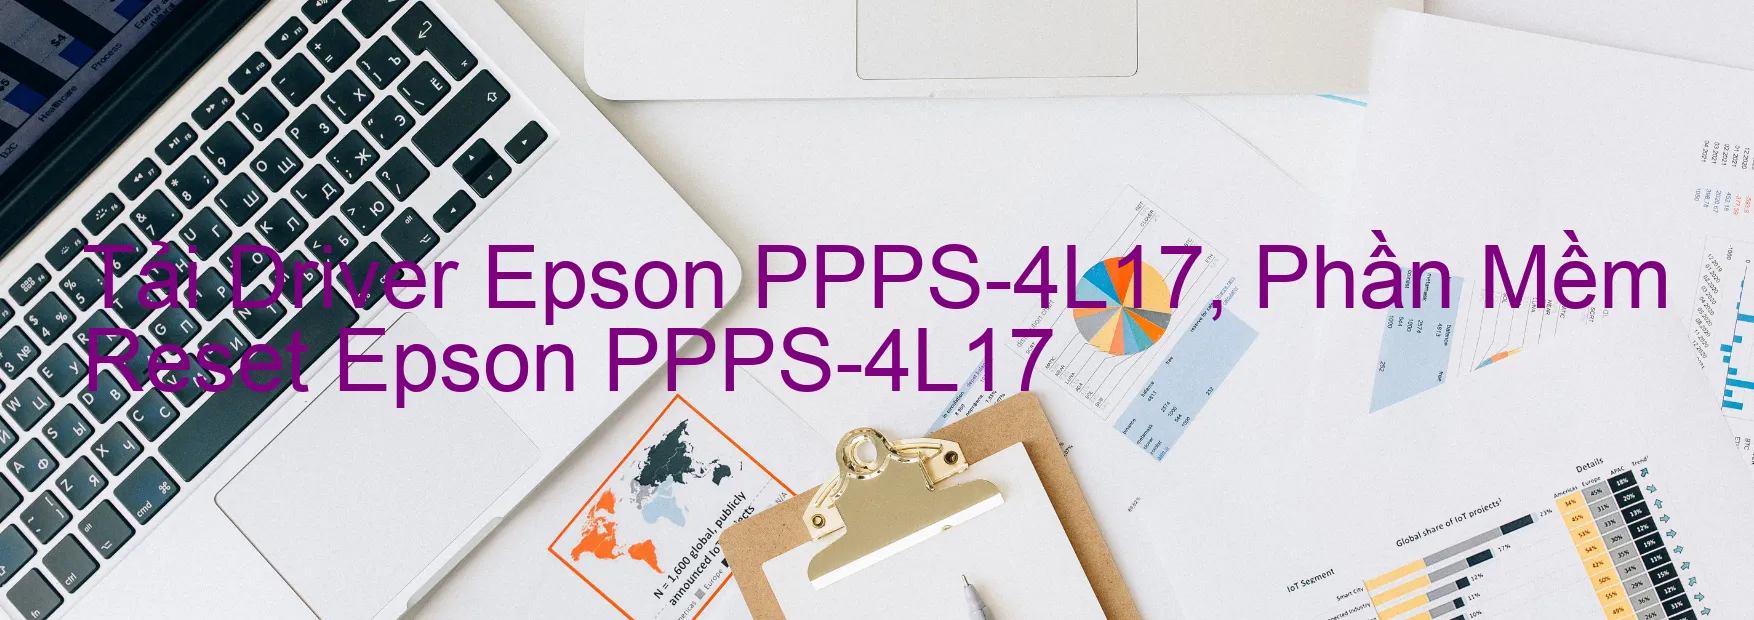 Driver Epson PPPS-4L17, Phần Mềm Reset Epson PPPS-4L17